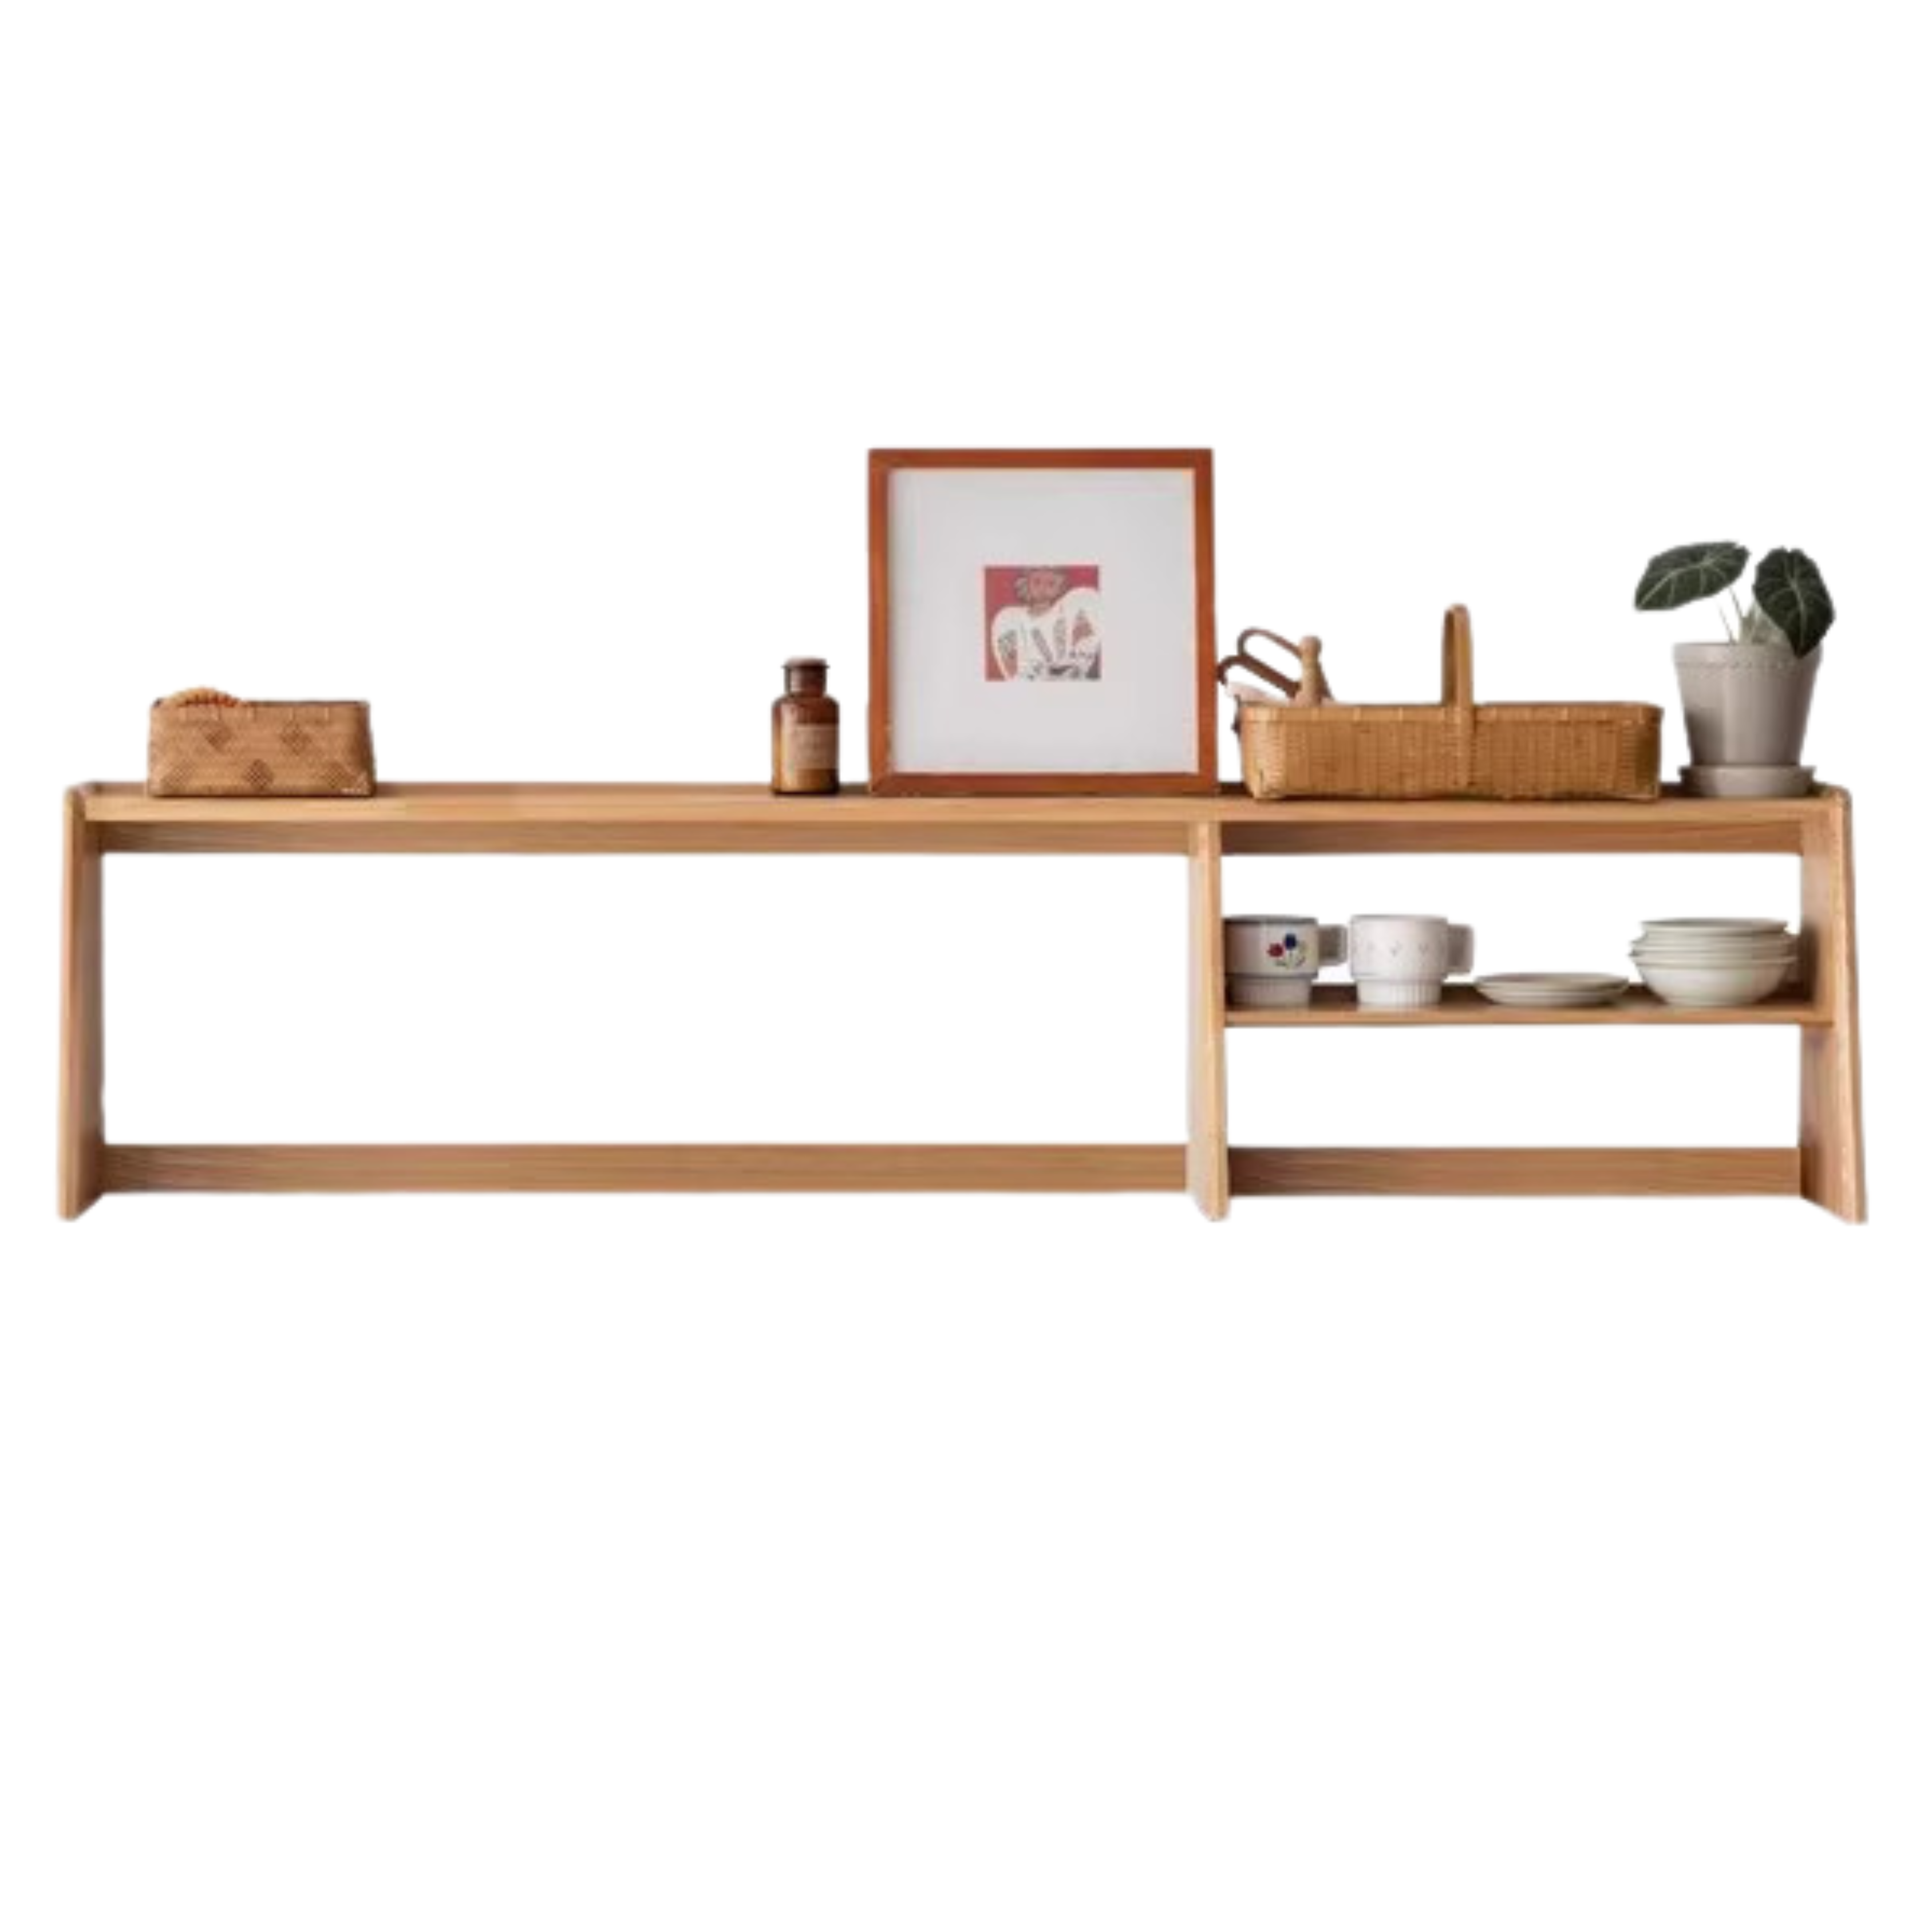 Sideboard shelf , kitchen shelf oak solid wood